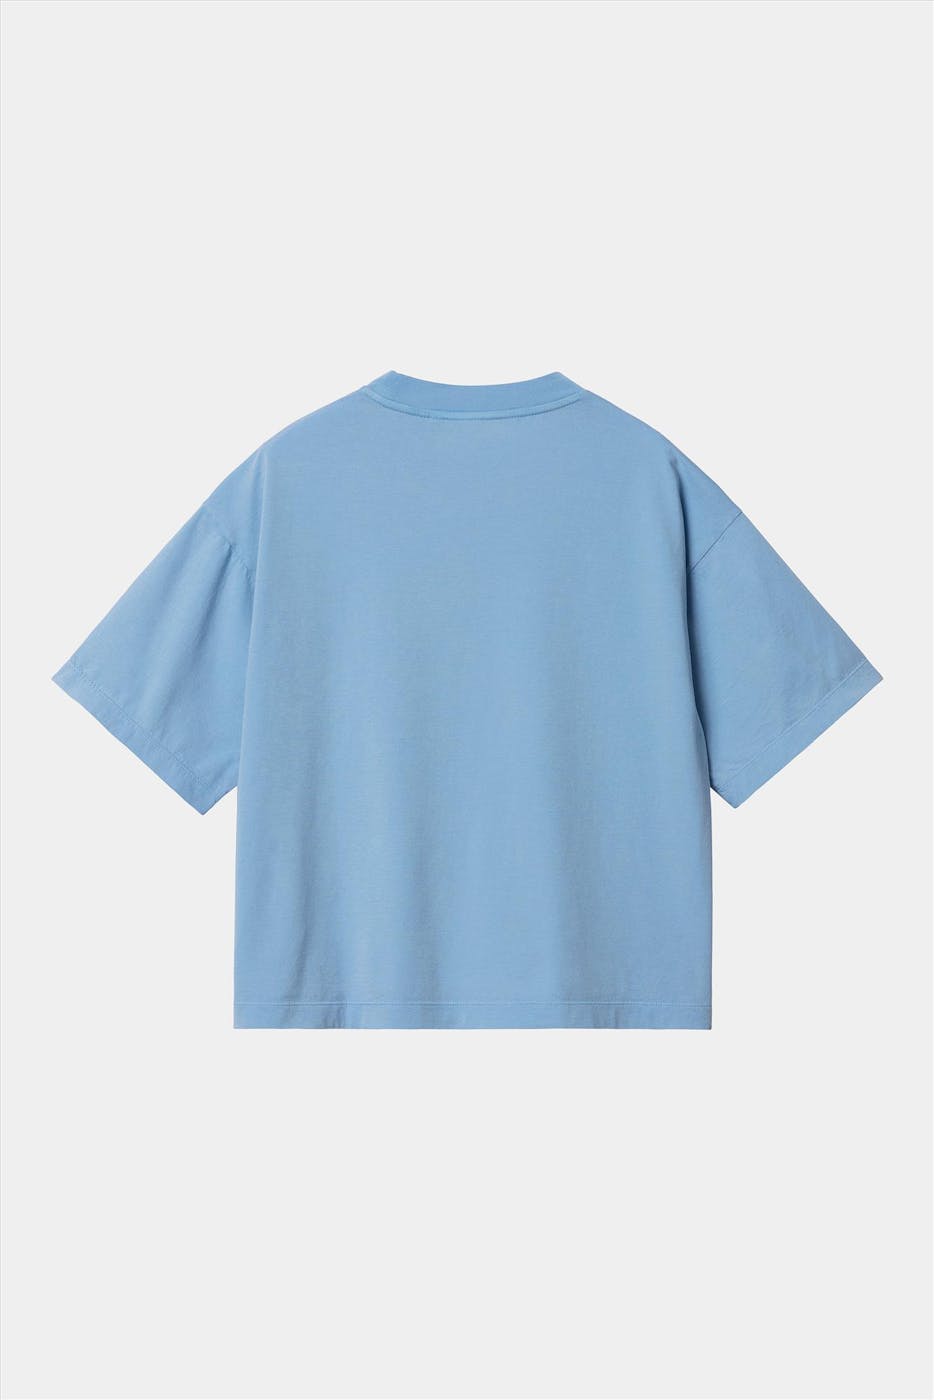 Carhartt WIP - Lichtblauwe Nelson T-shirt